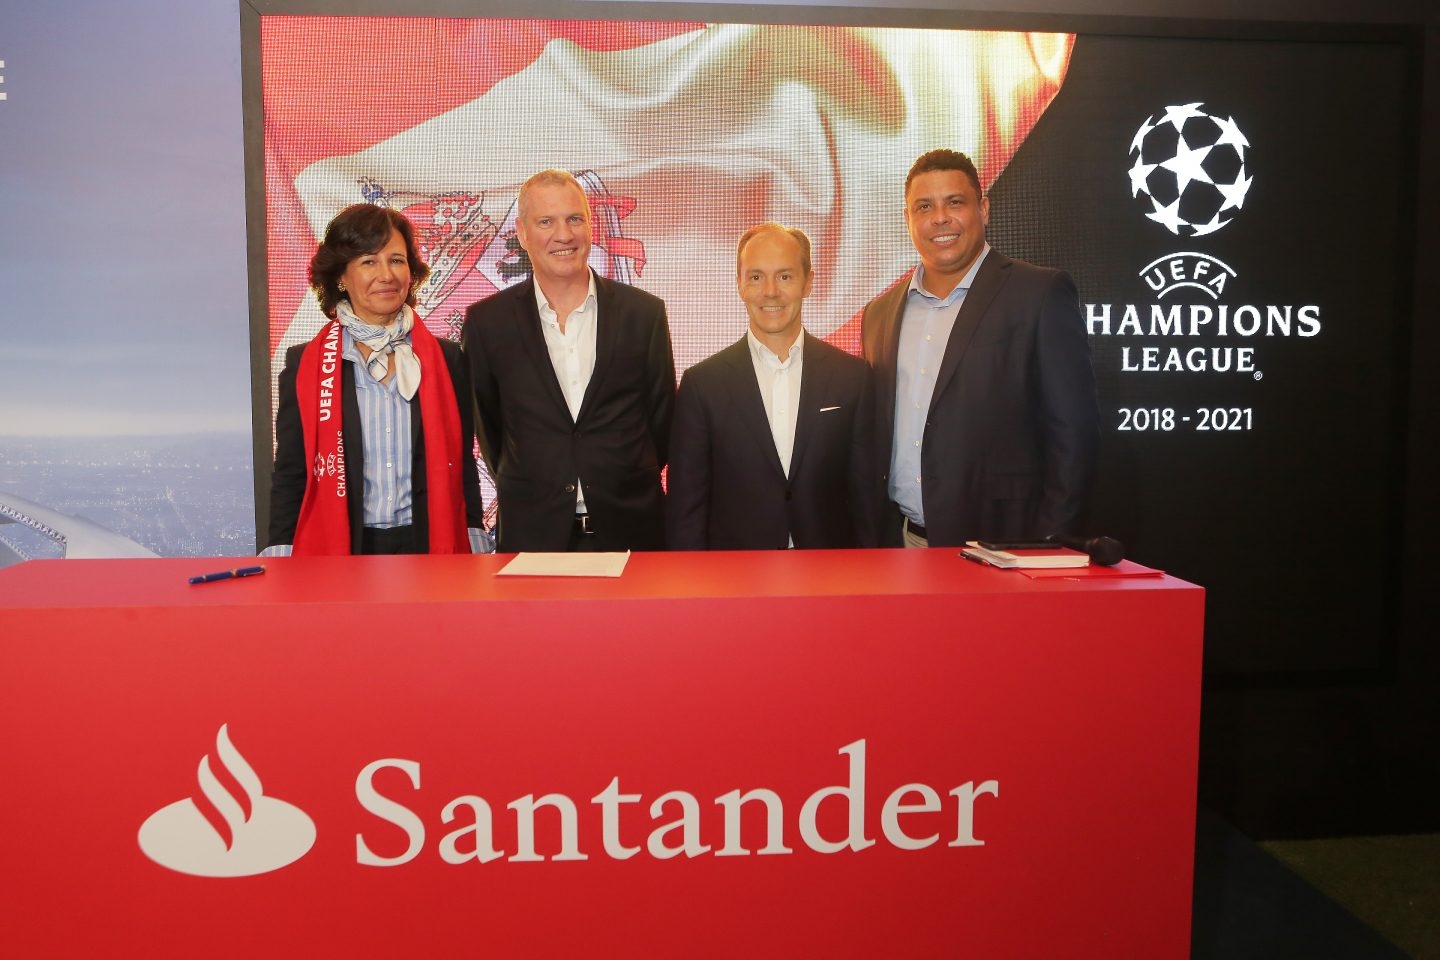 Santander patrocinará la Champions League.